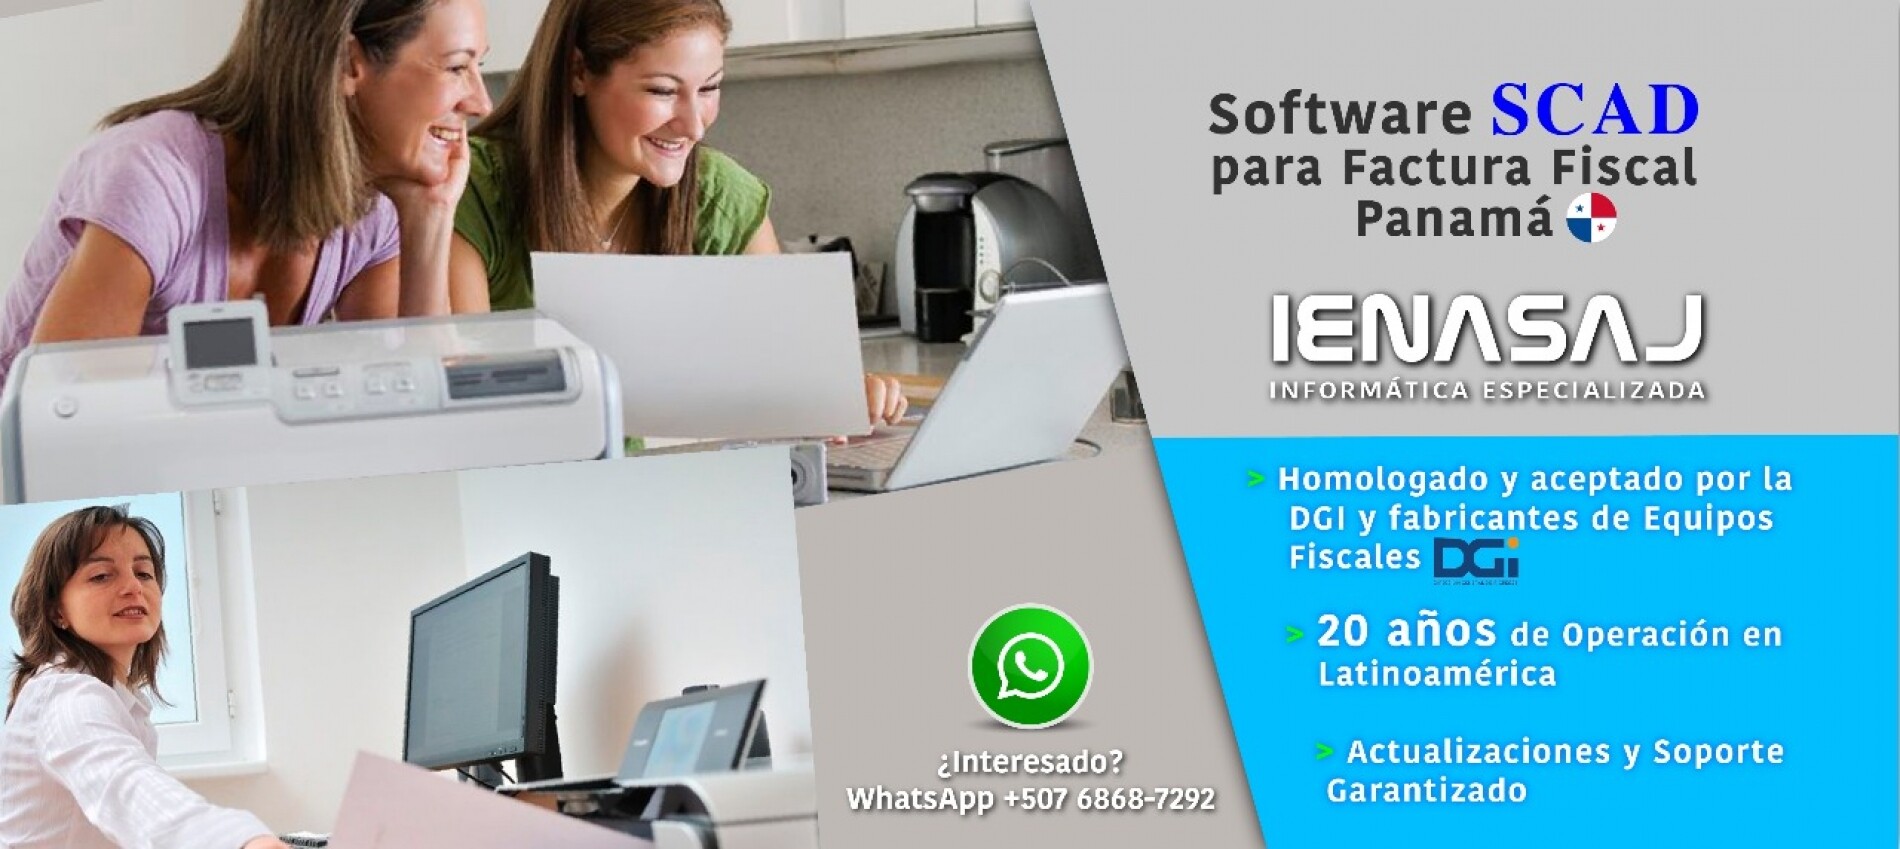 Impresora Fiscal Y Software Para Panamá